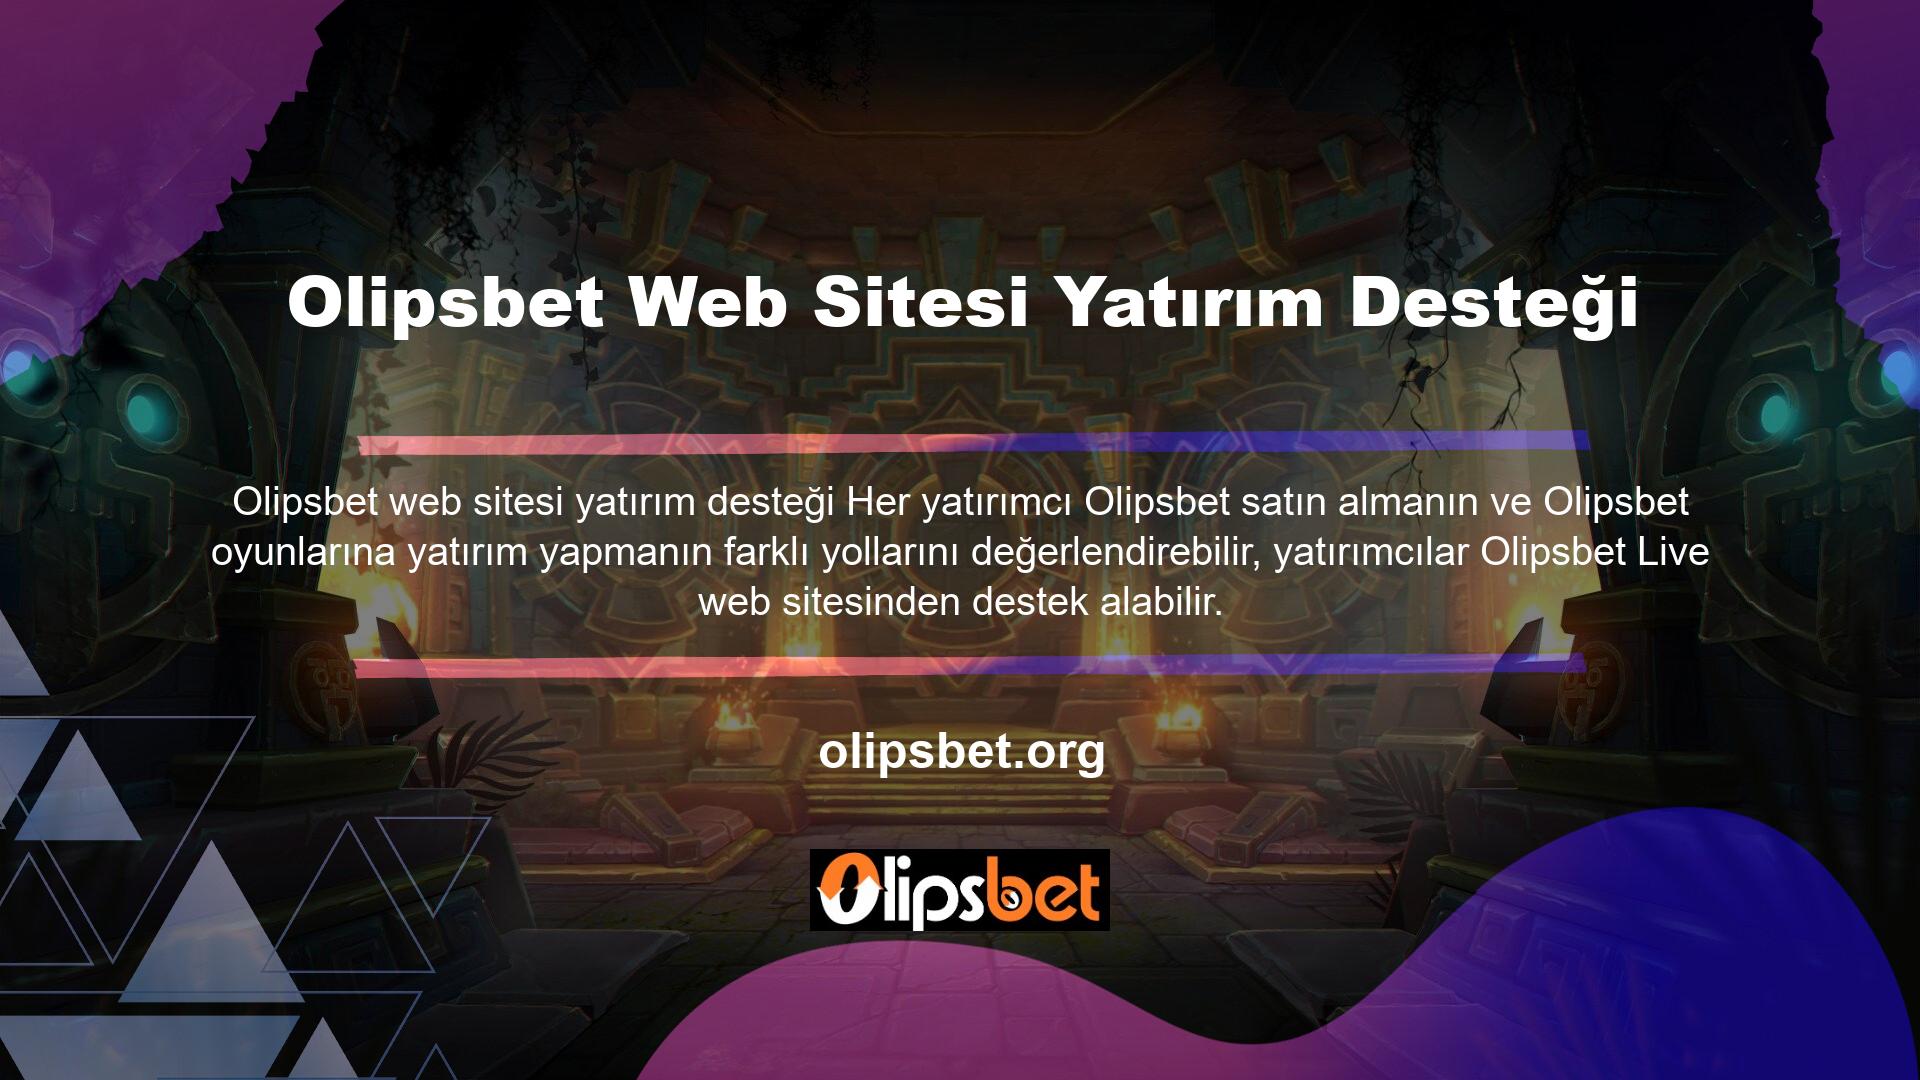 Olipsbet web sitesi yatırım desteği